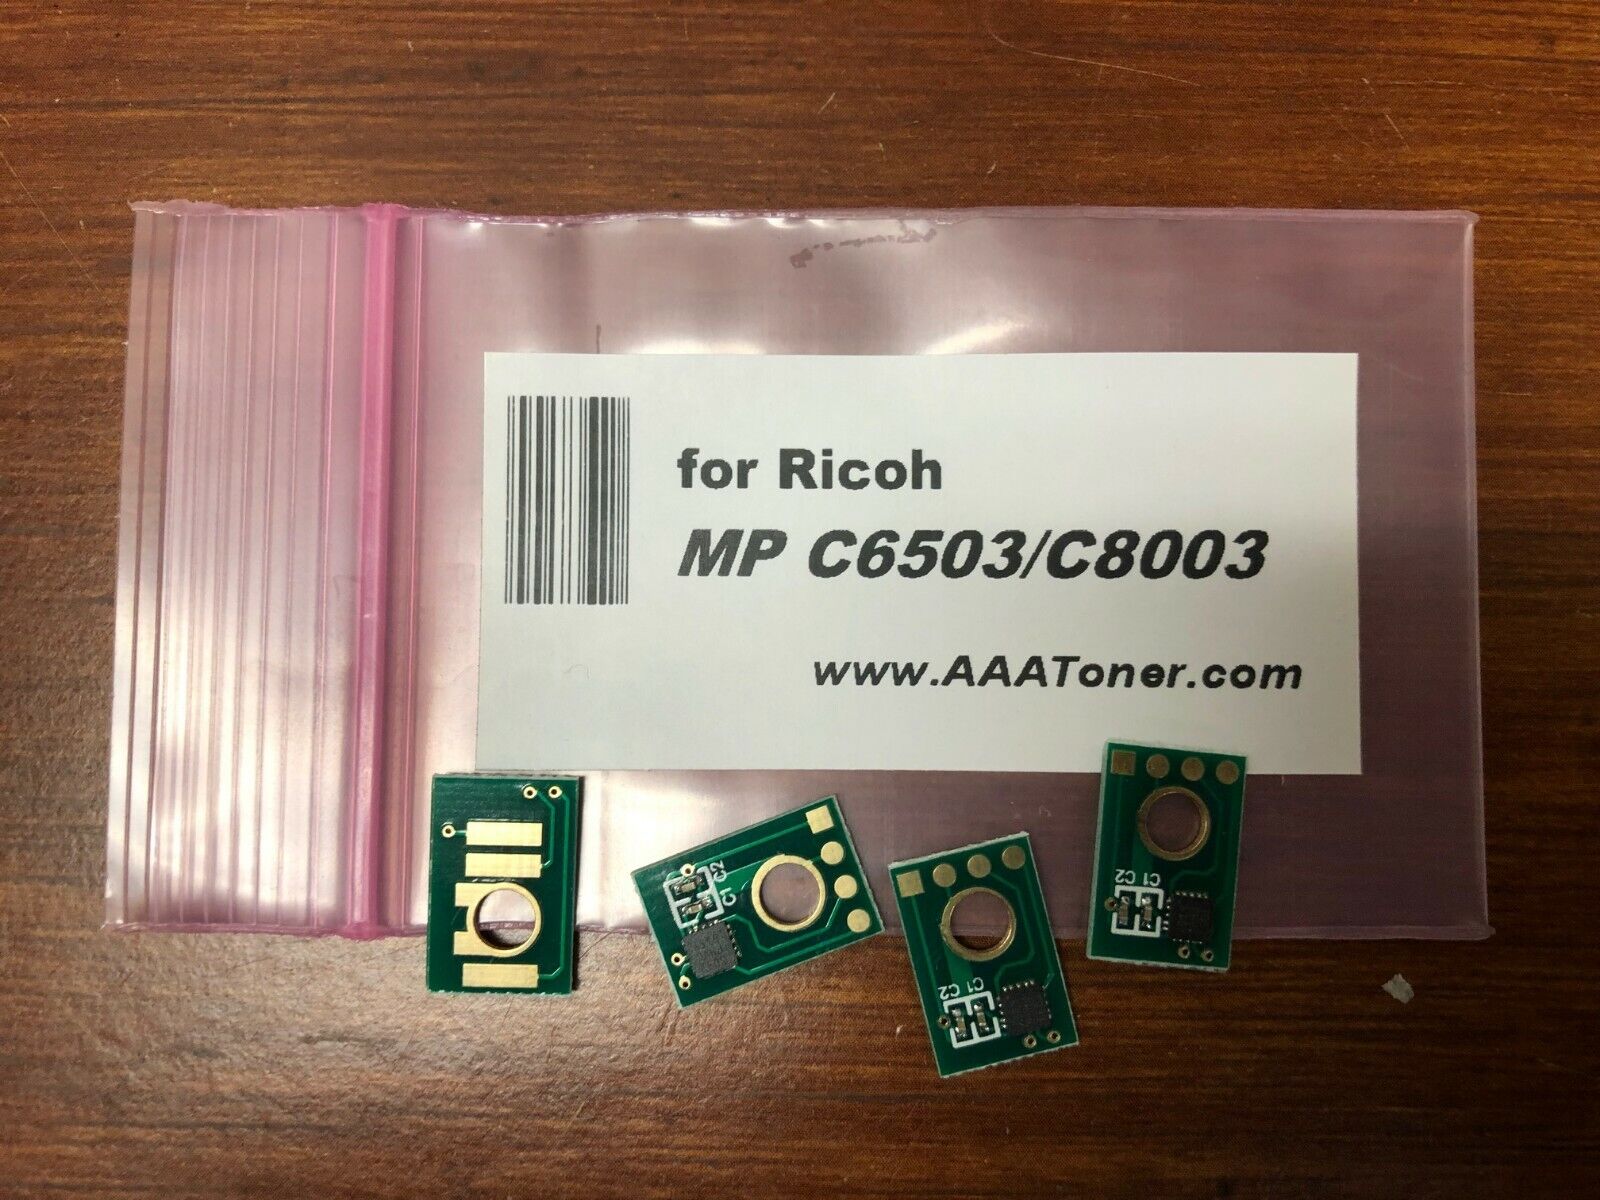 4 x Toner Chip for Ricoh Aficio MP C6503, MP C8003 (842196 ~ 842197) Refill